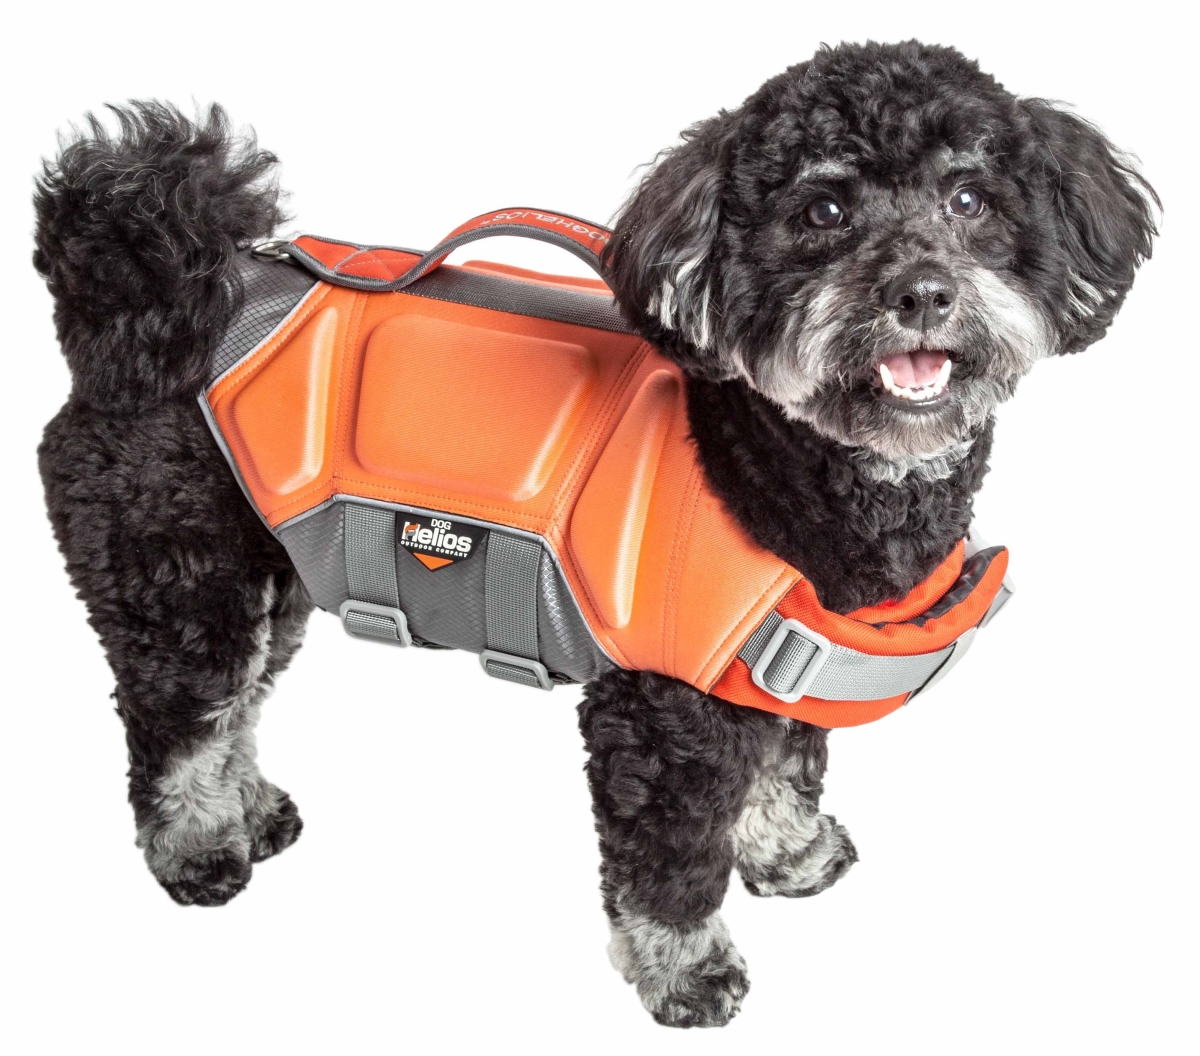 Ha18orlg Tidal Guard Multi-point Strategically-stitched Reflective Pet Dog Life Jacket Vest - Orange, Large